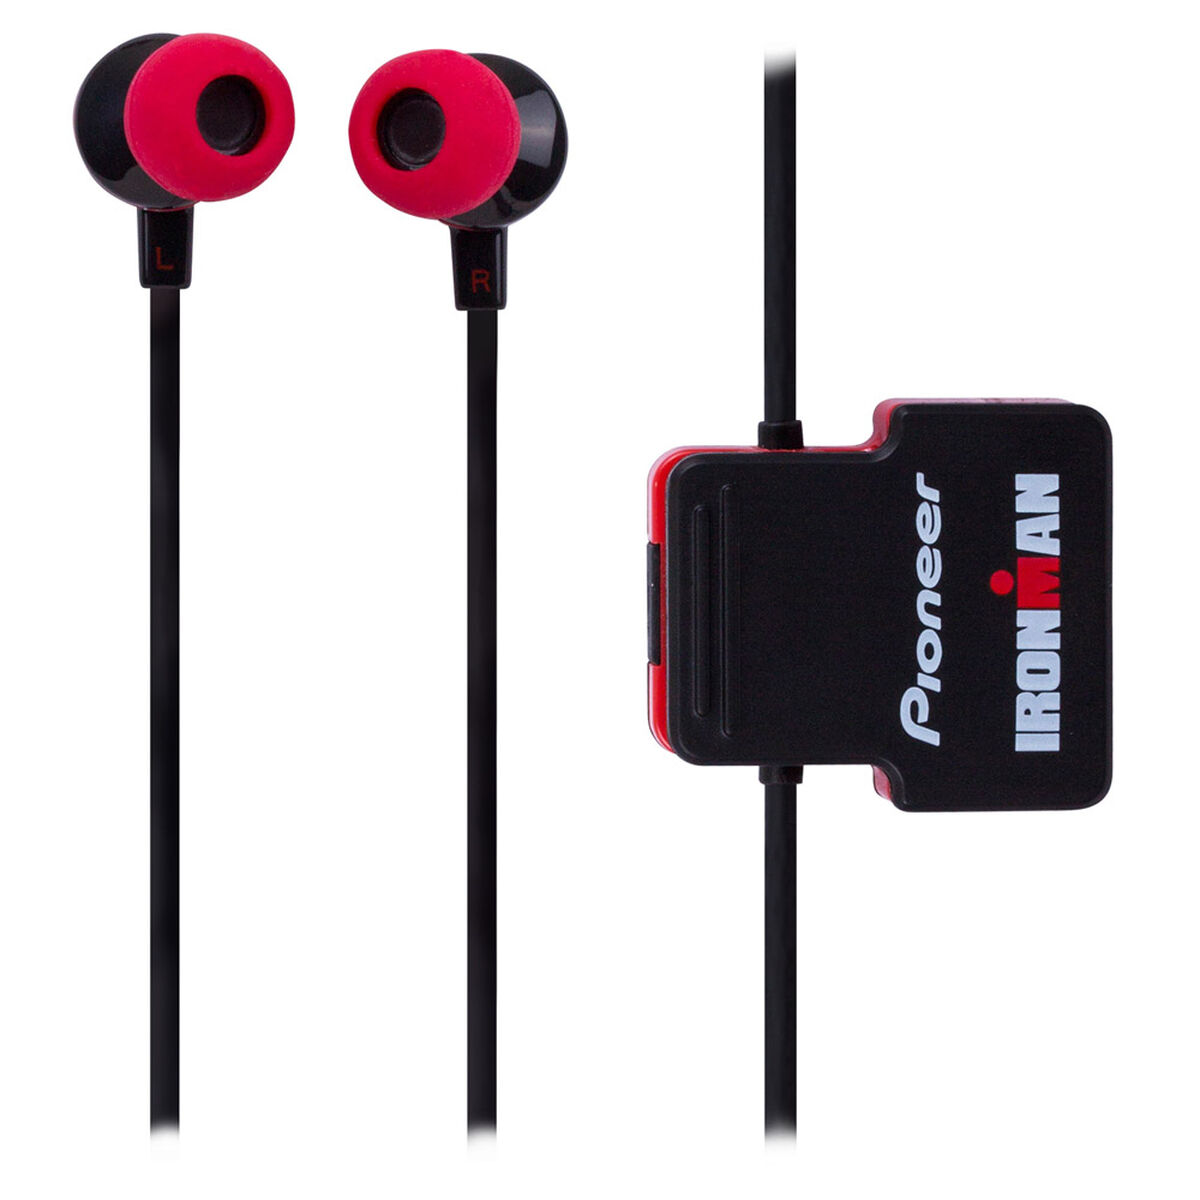 Audífonos Bluetooth Pioneer SE-CL5BT/L Rojos